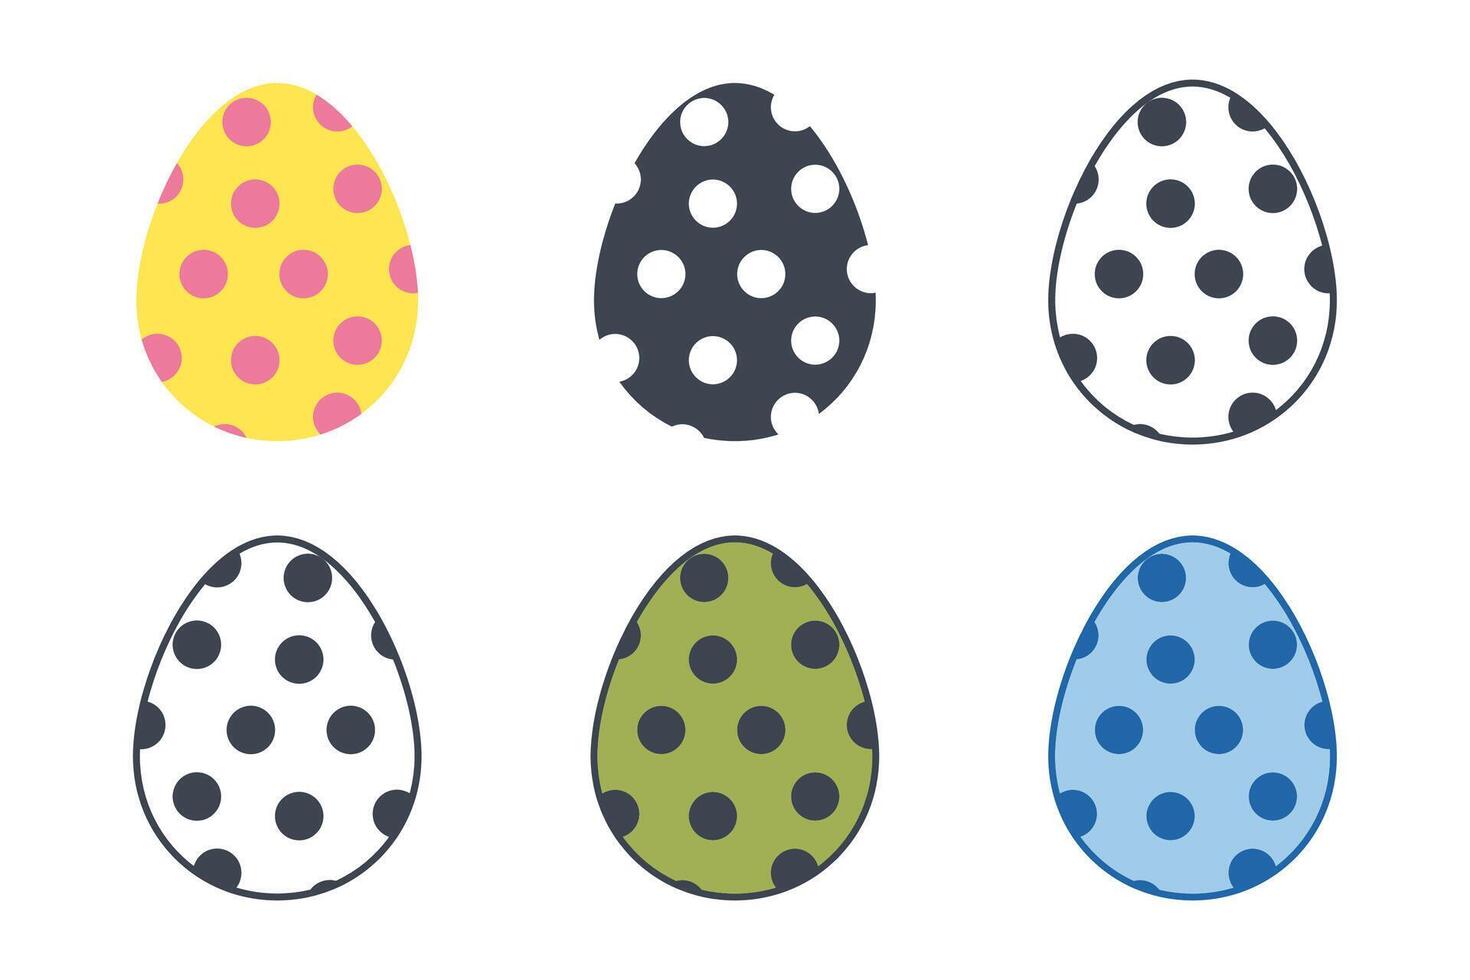 Easter day festival. Easter eggs icons on white background. Vector illustration